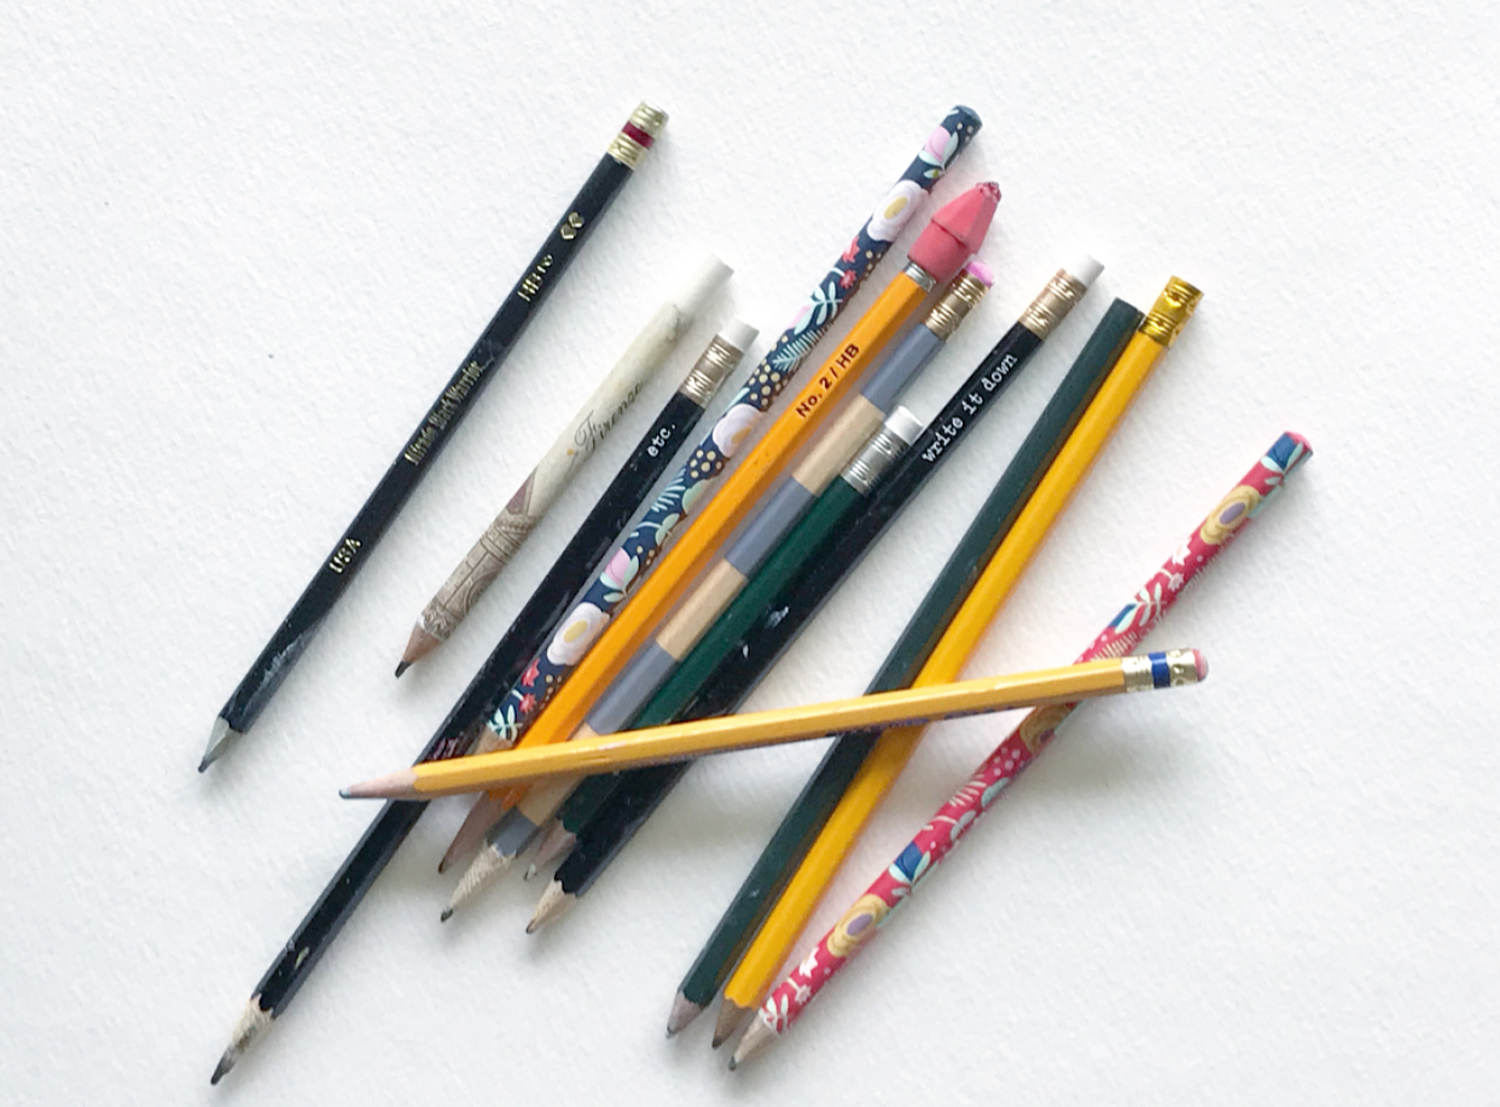 Rae_Missigman_top_10_tools_2_pencils.jpg